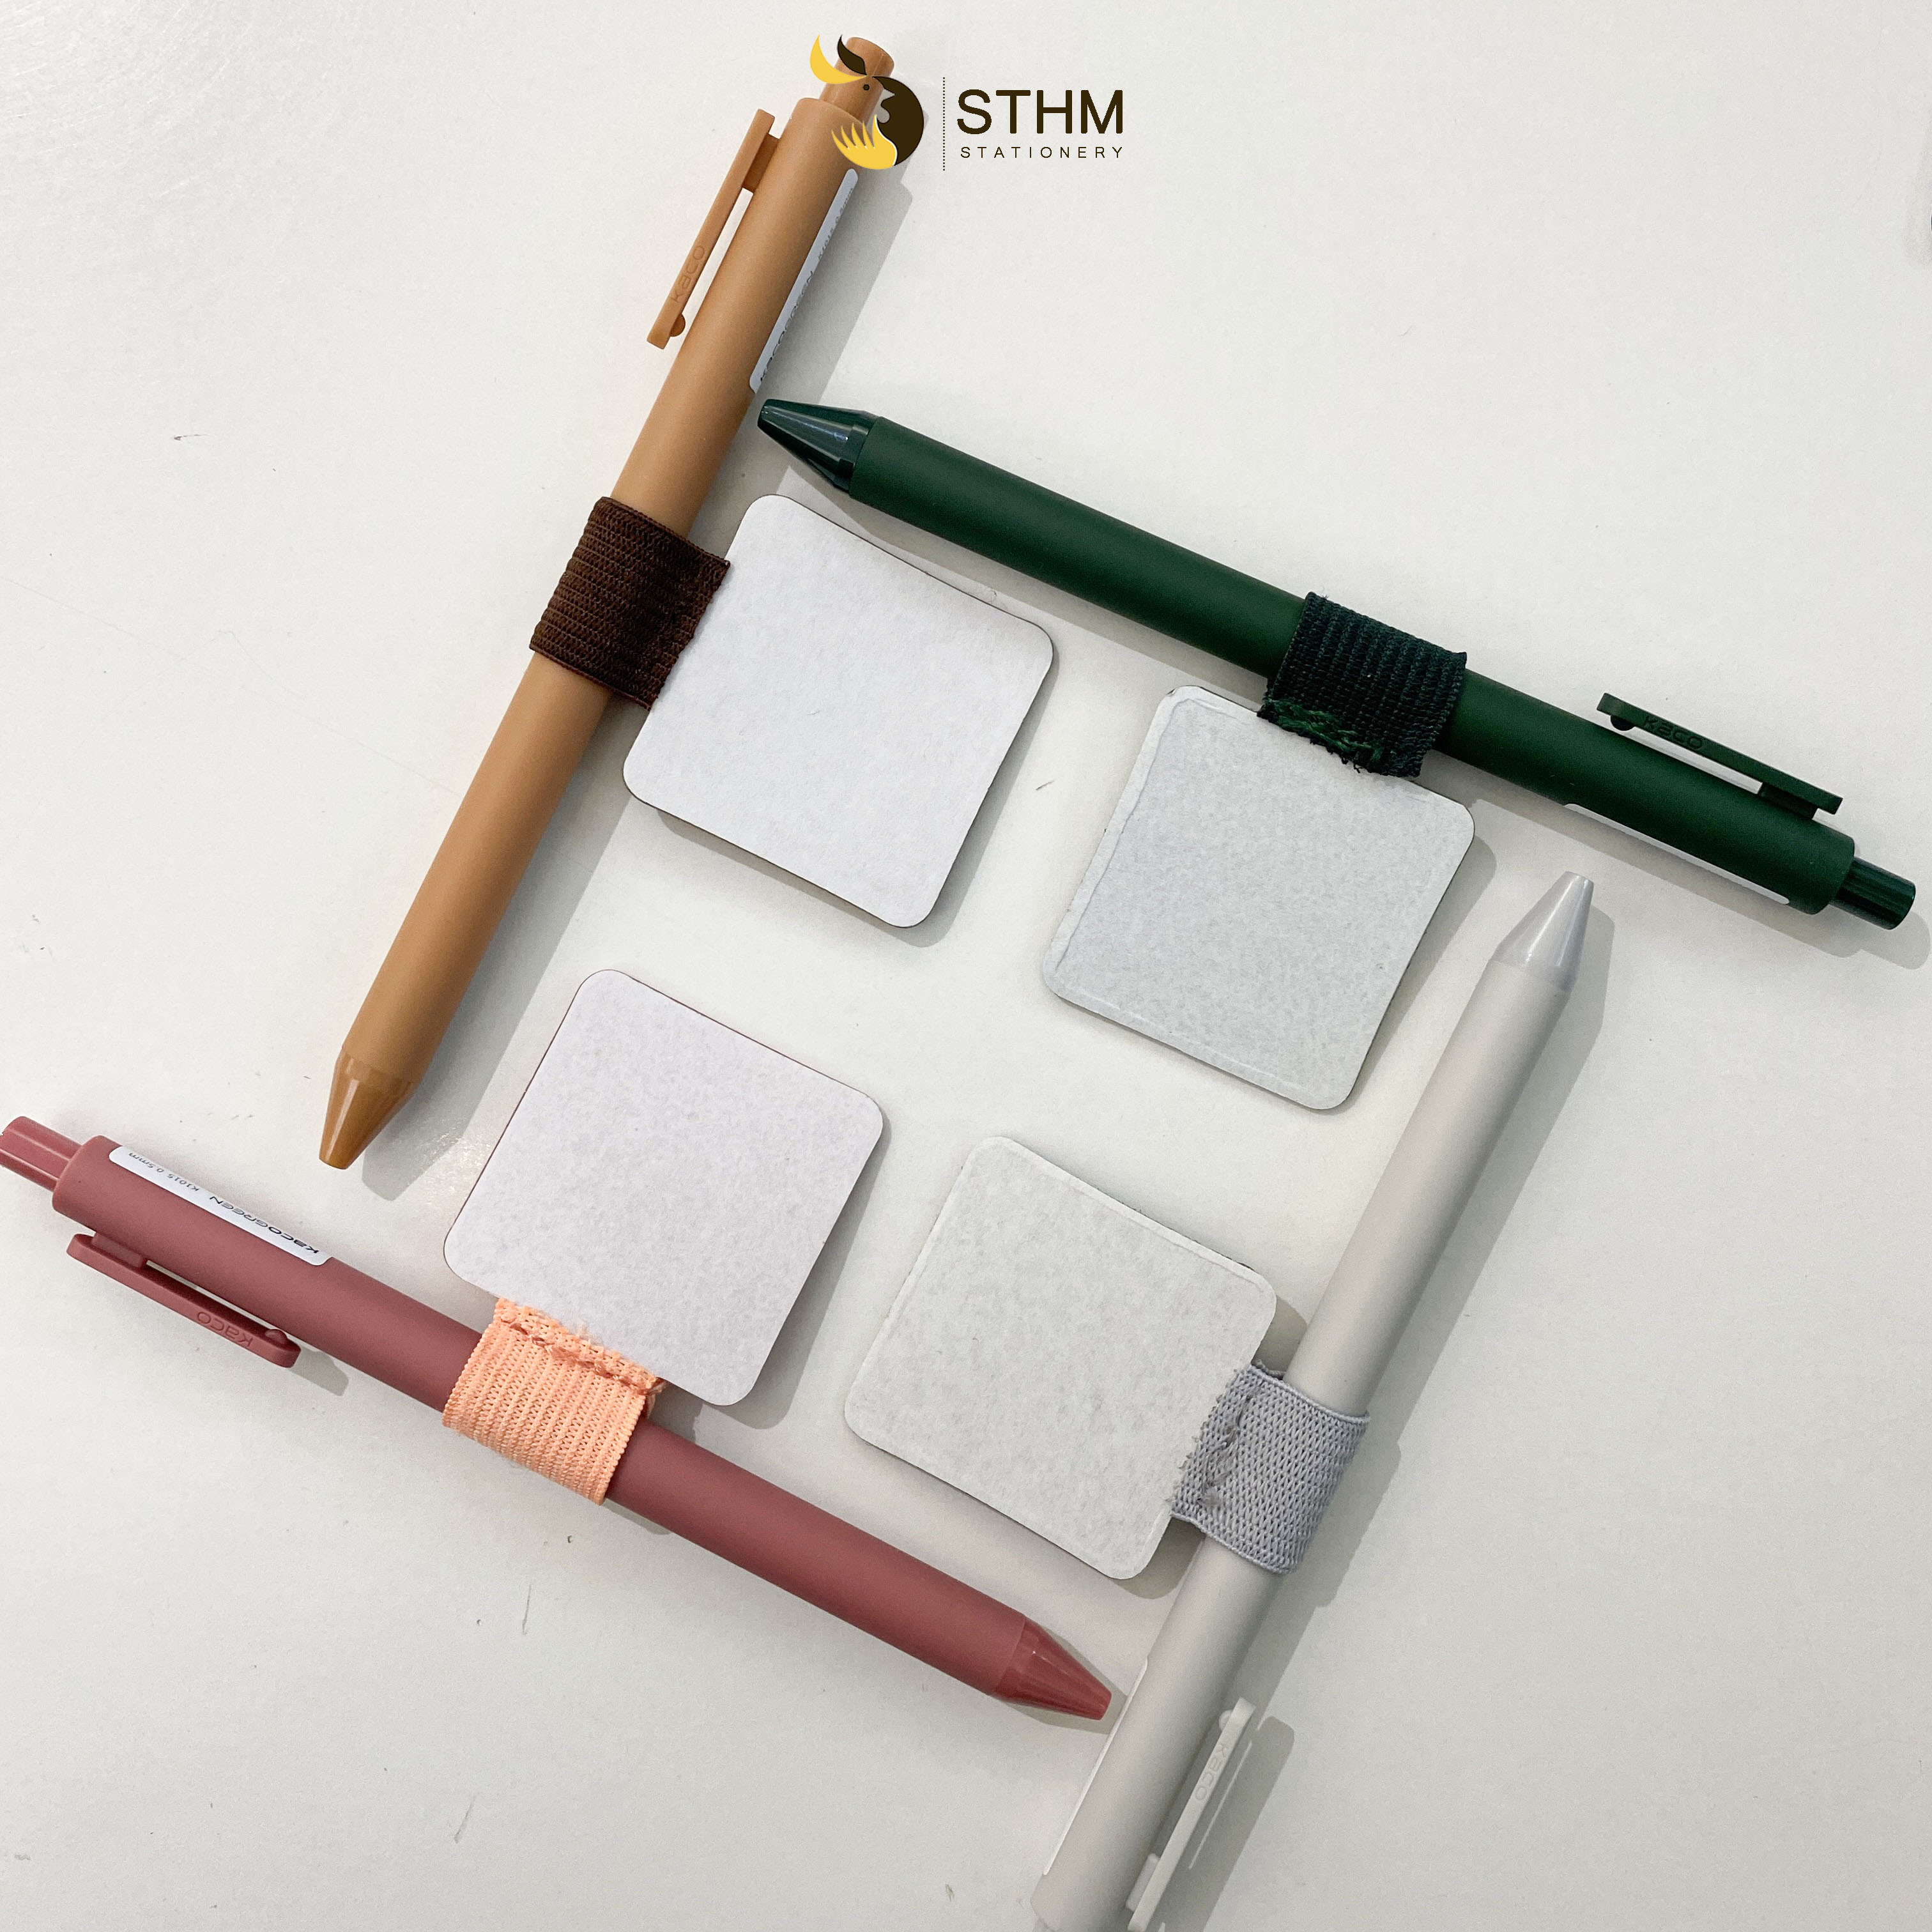 [STHM stationery] - Miếng dán gài bút cho sổ tay - dùng cho tất cả loại sổ tay